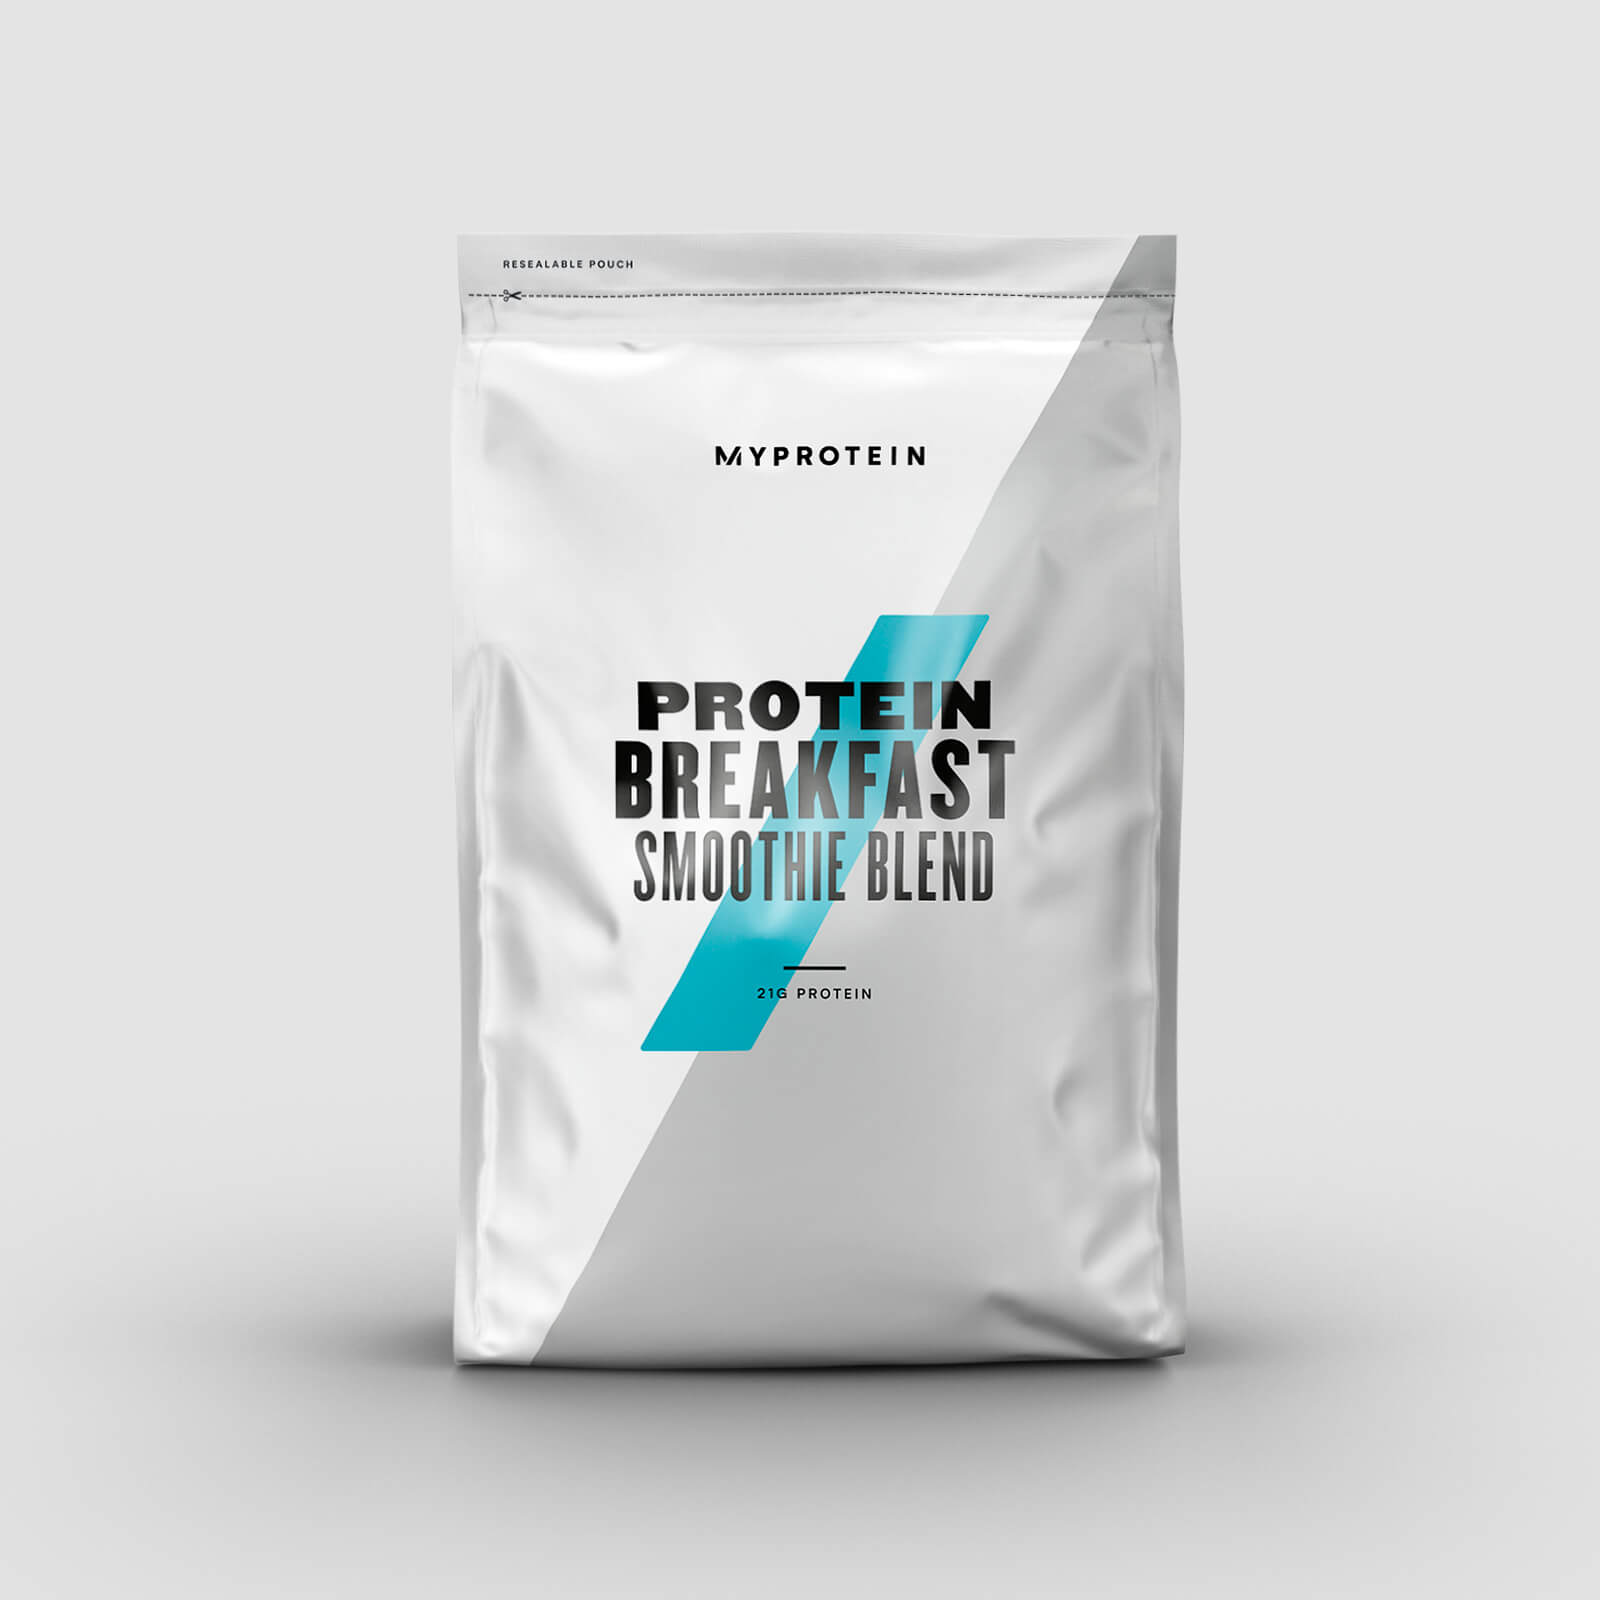 Protein Breakfast Smoothie Blend